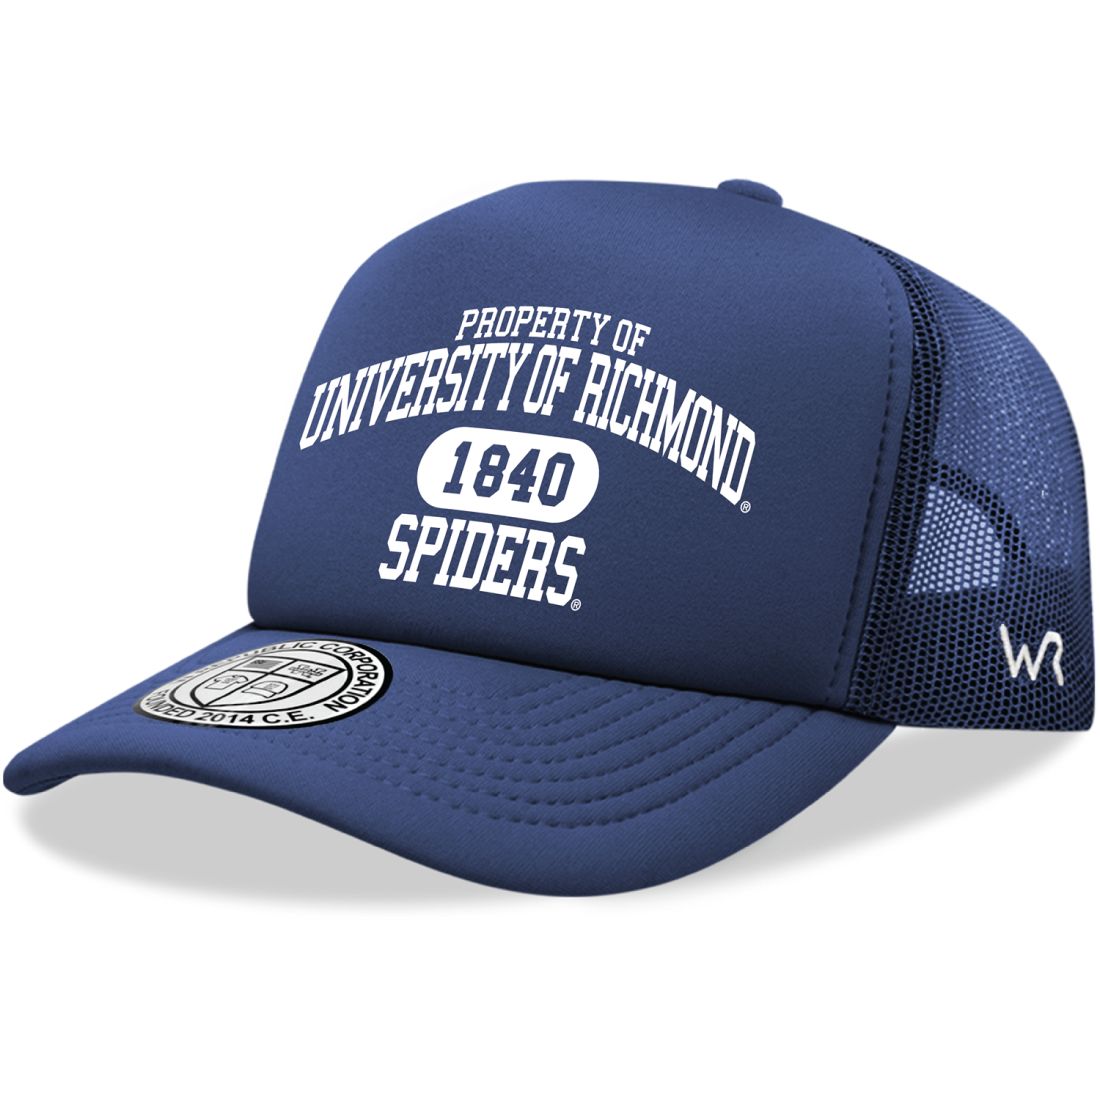 University of Richmond Spiders Property Foam Trucker Hats